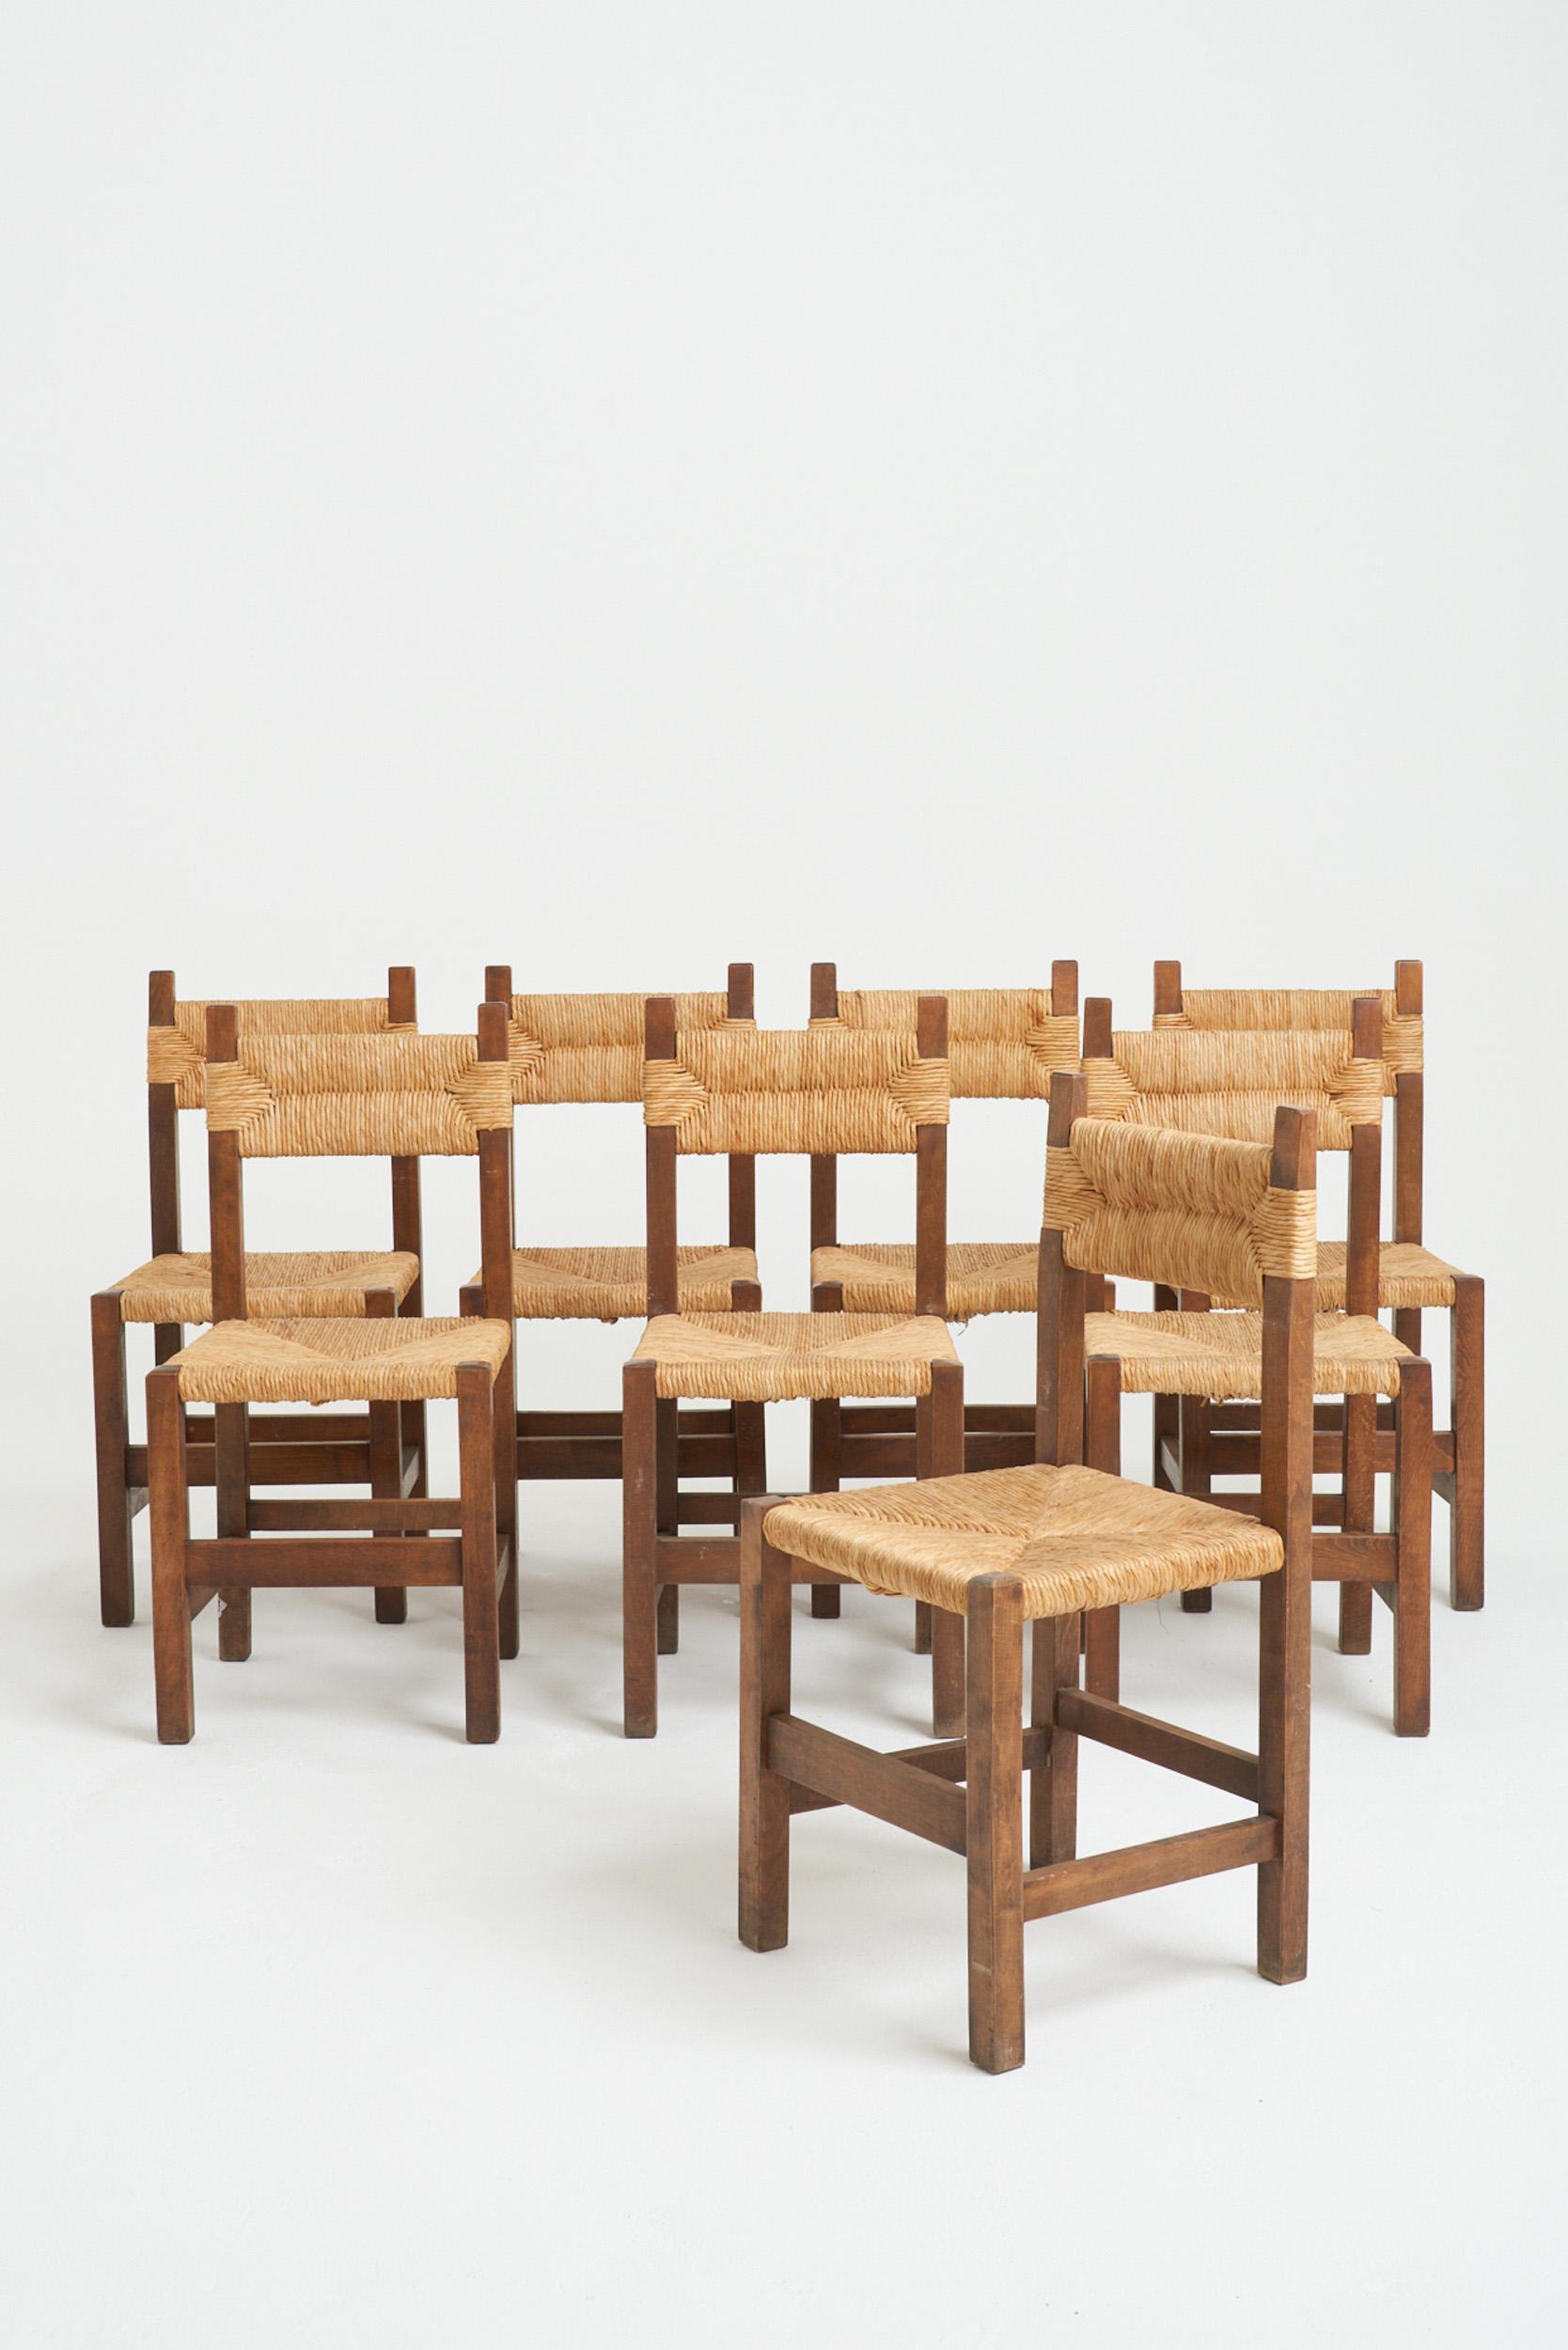 Ein Satz von acht Esszimmerstühlen aus Binsen und Buche, in der Art von Charlotte Perriand.
Spanien, Mitte 20. Jahrhundert
87 cm hoch x 41 cm breit x 41 cm tief, Sitzhöhe 45,5 cm